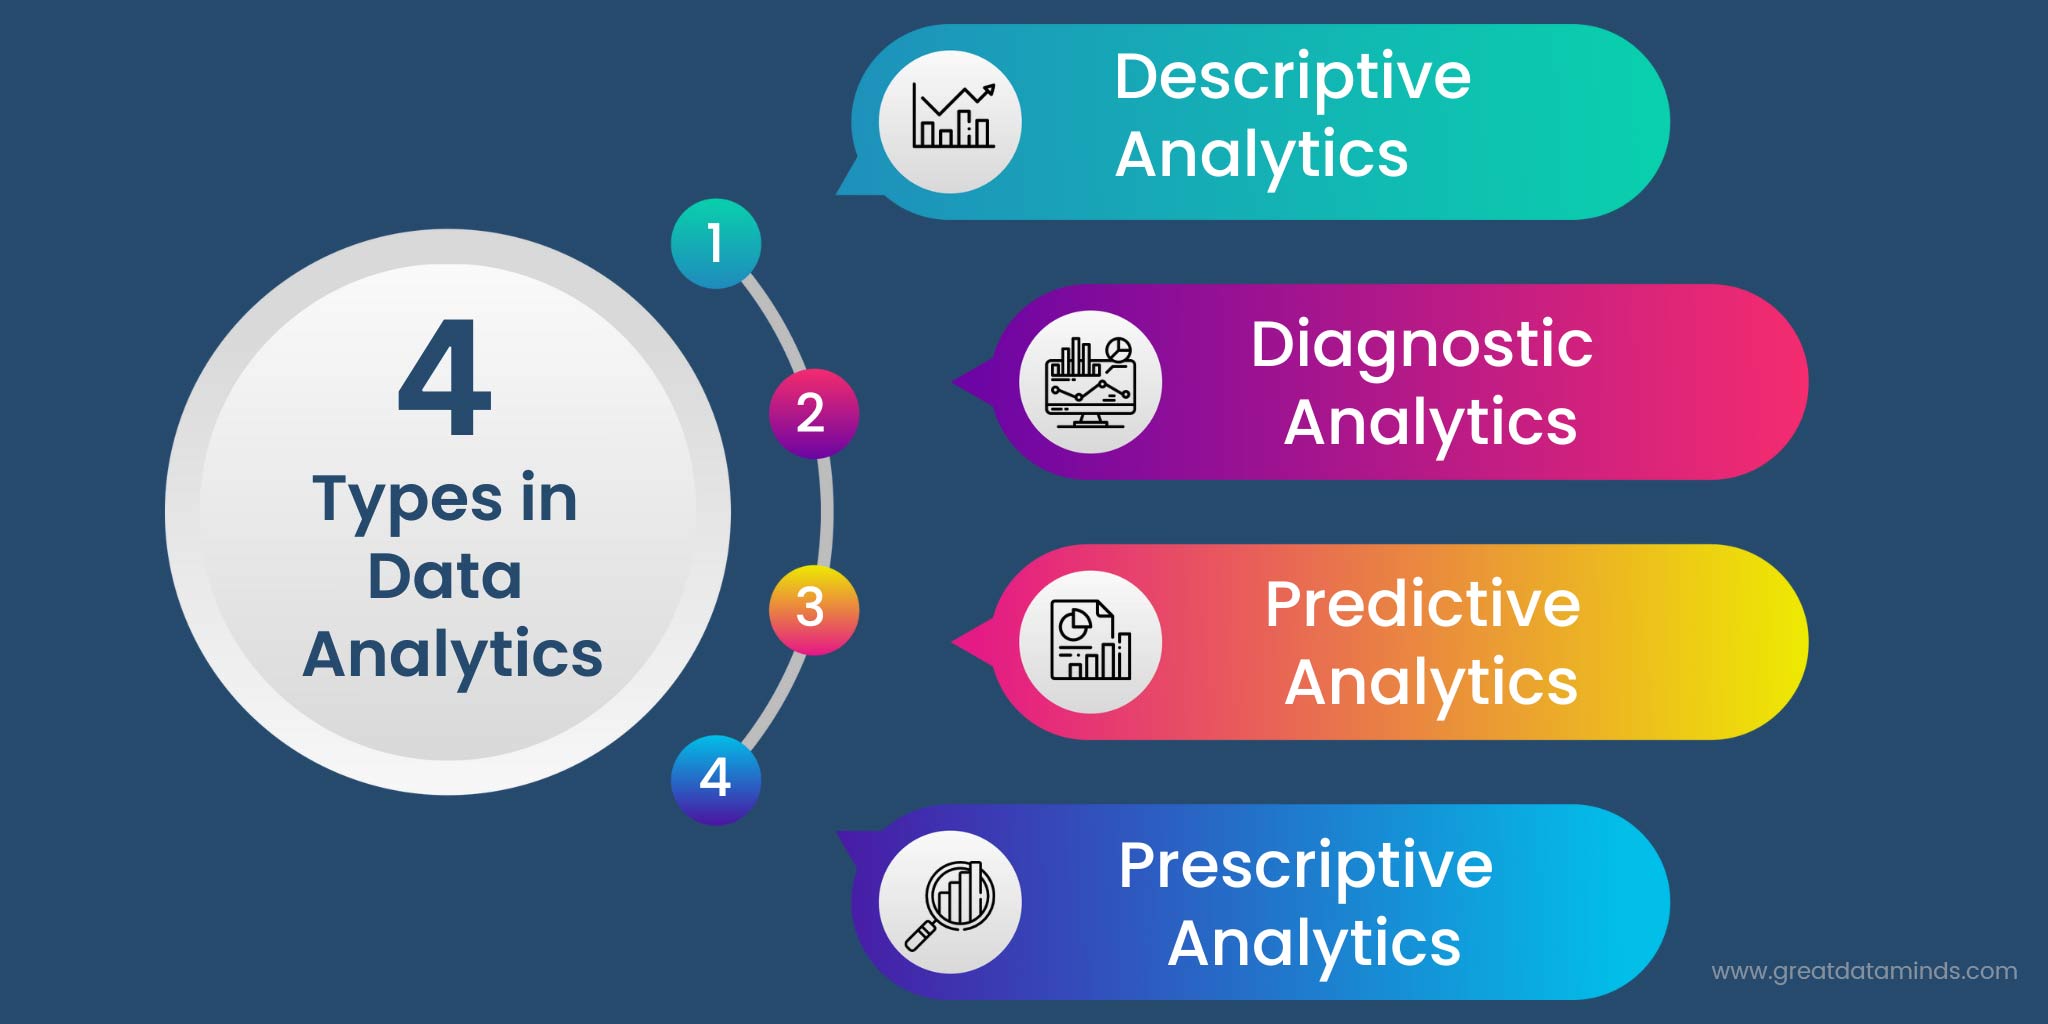 4 main areas of data analytics